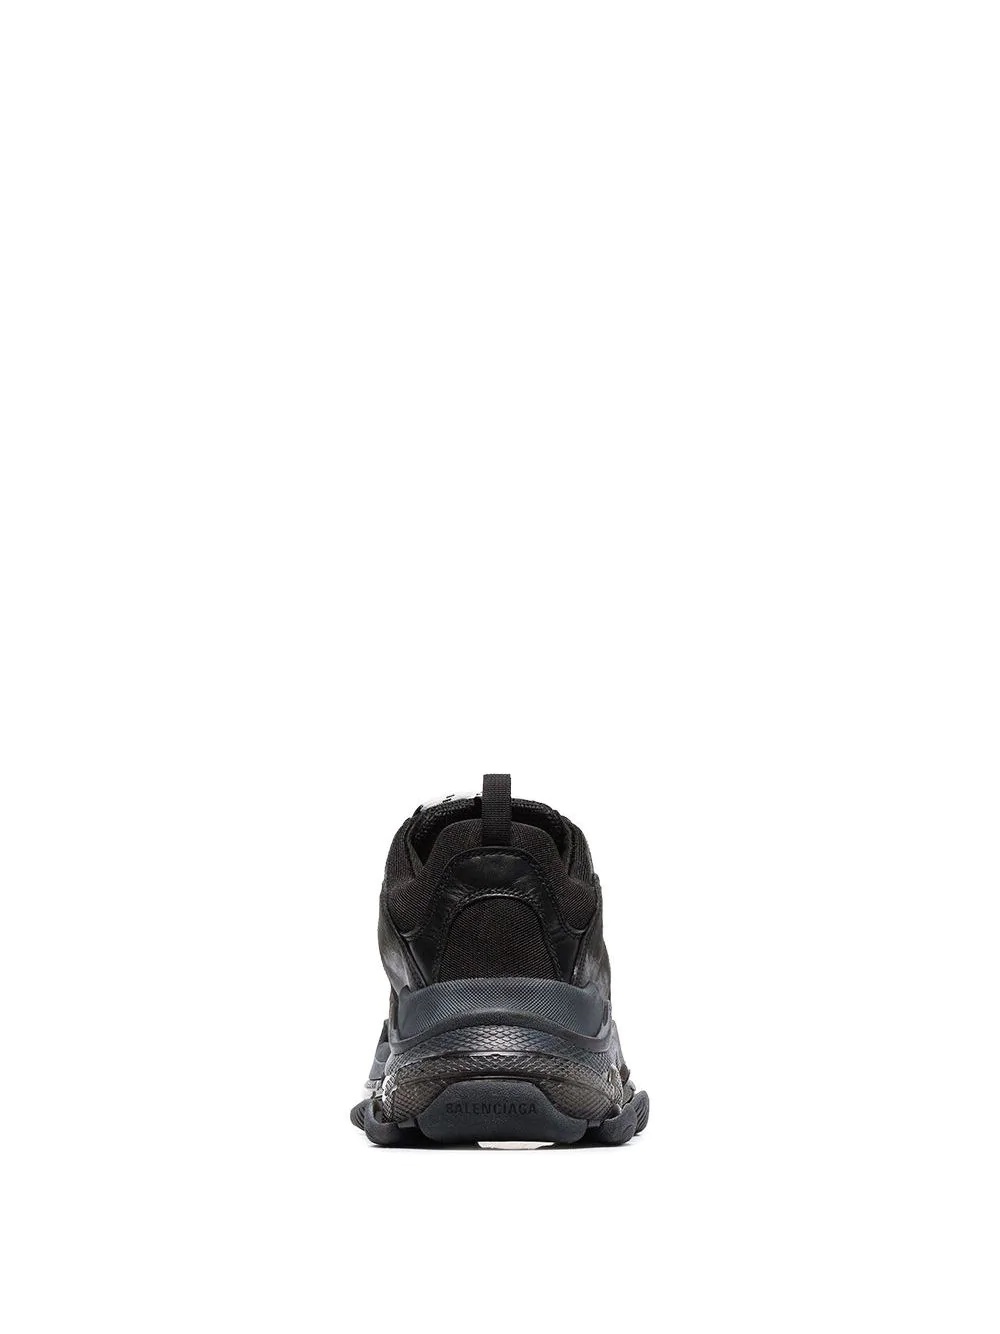 Triple S clear sole sneakers - 4